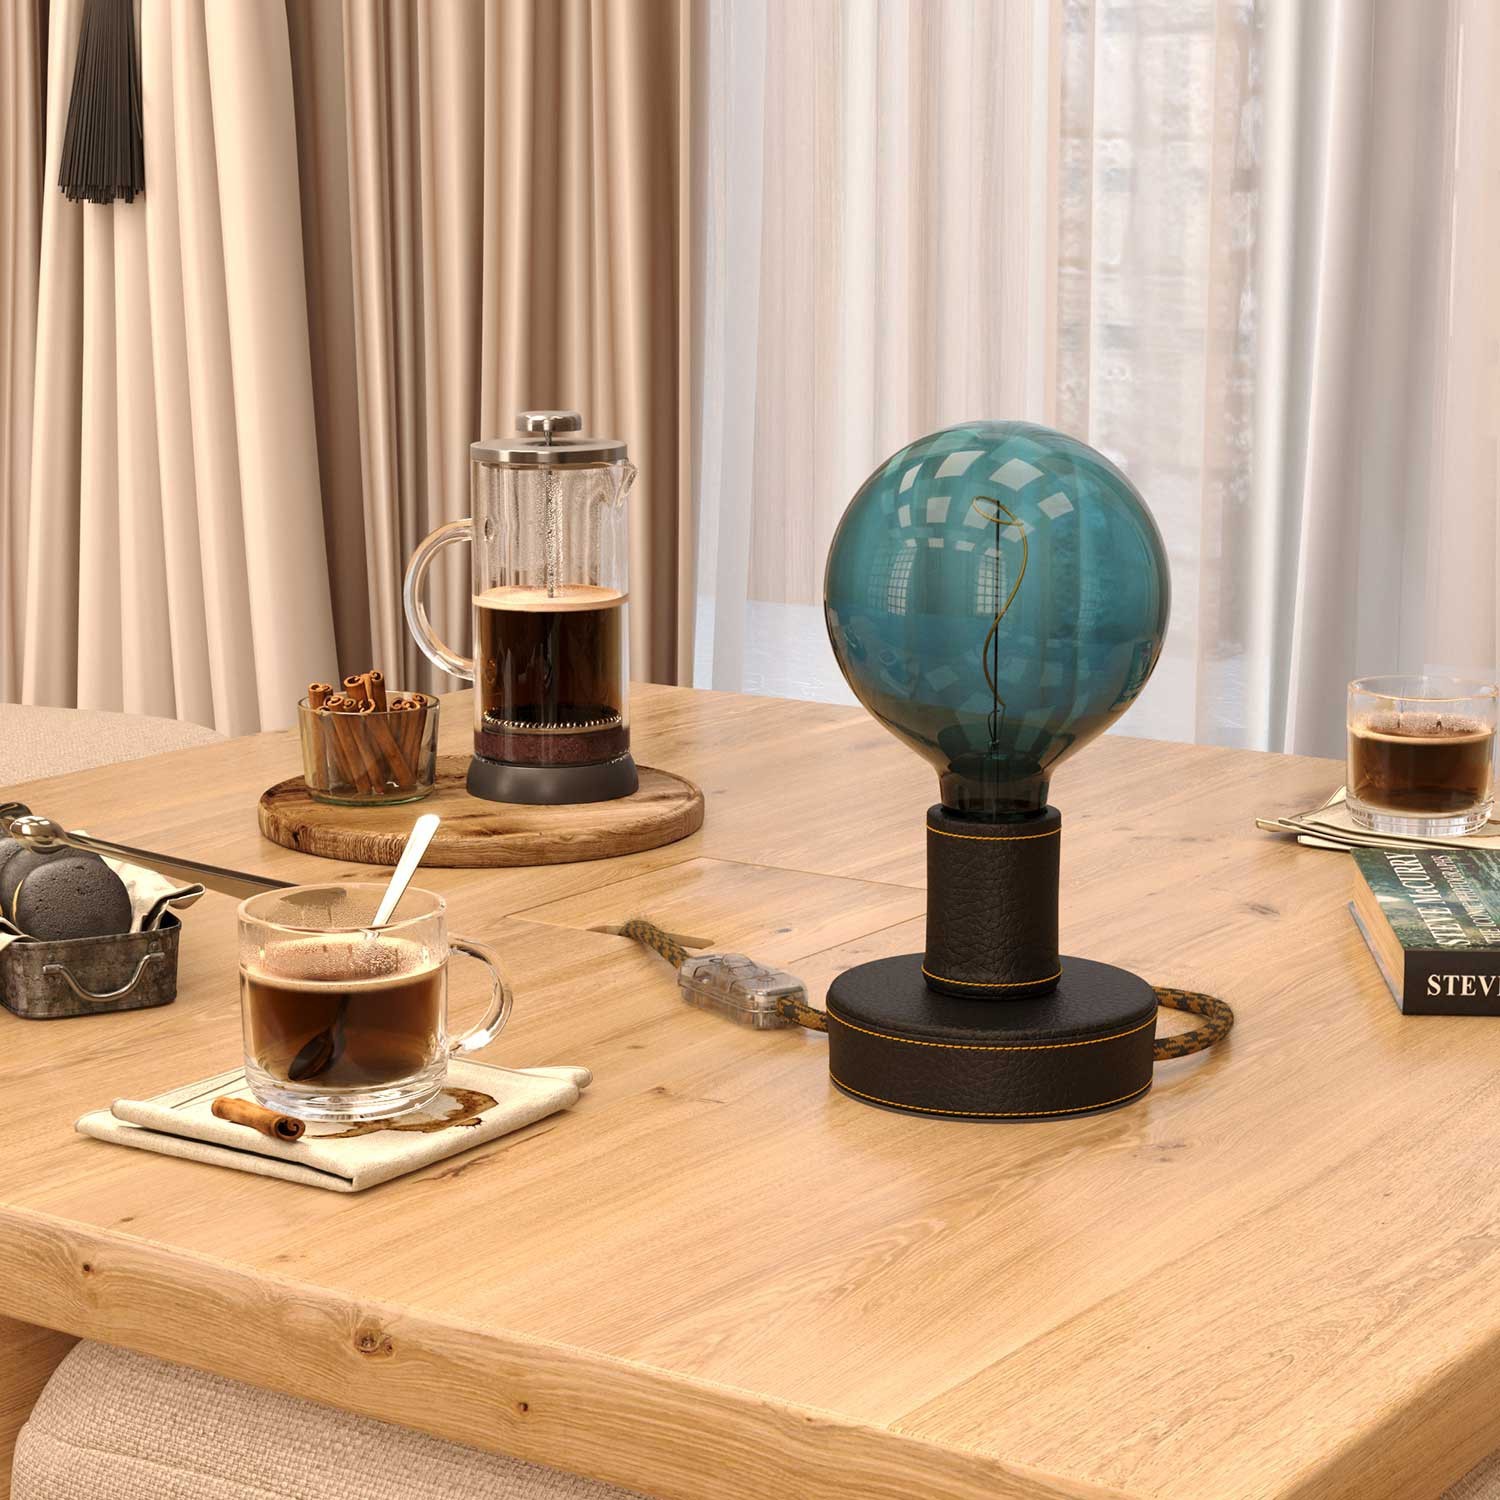 Posaluce Leather, houten tafellamp inclusief lichtbron, textielkabel, schakelaar en 2-polige stekker